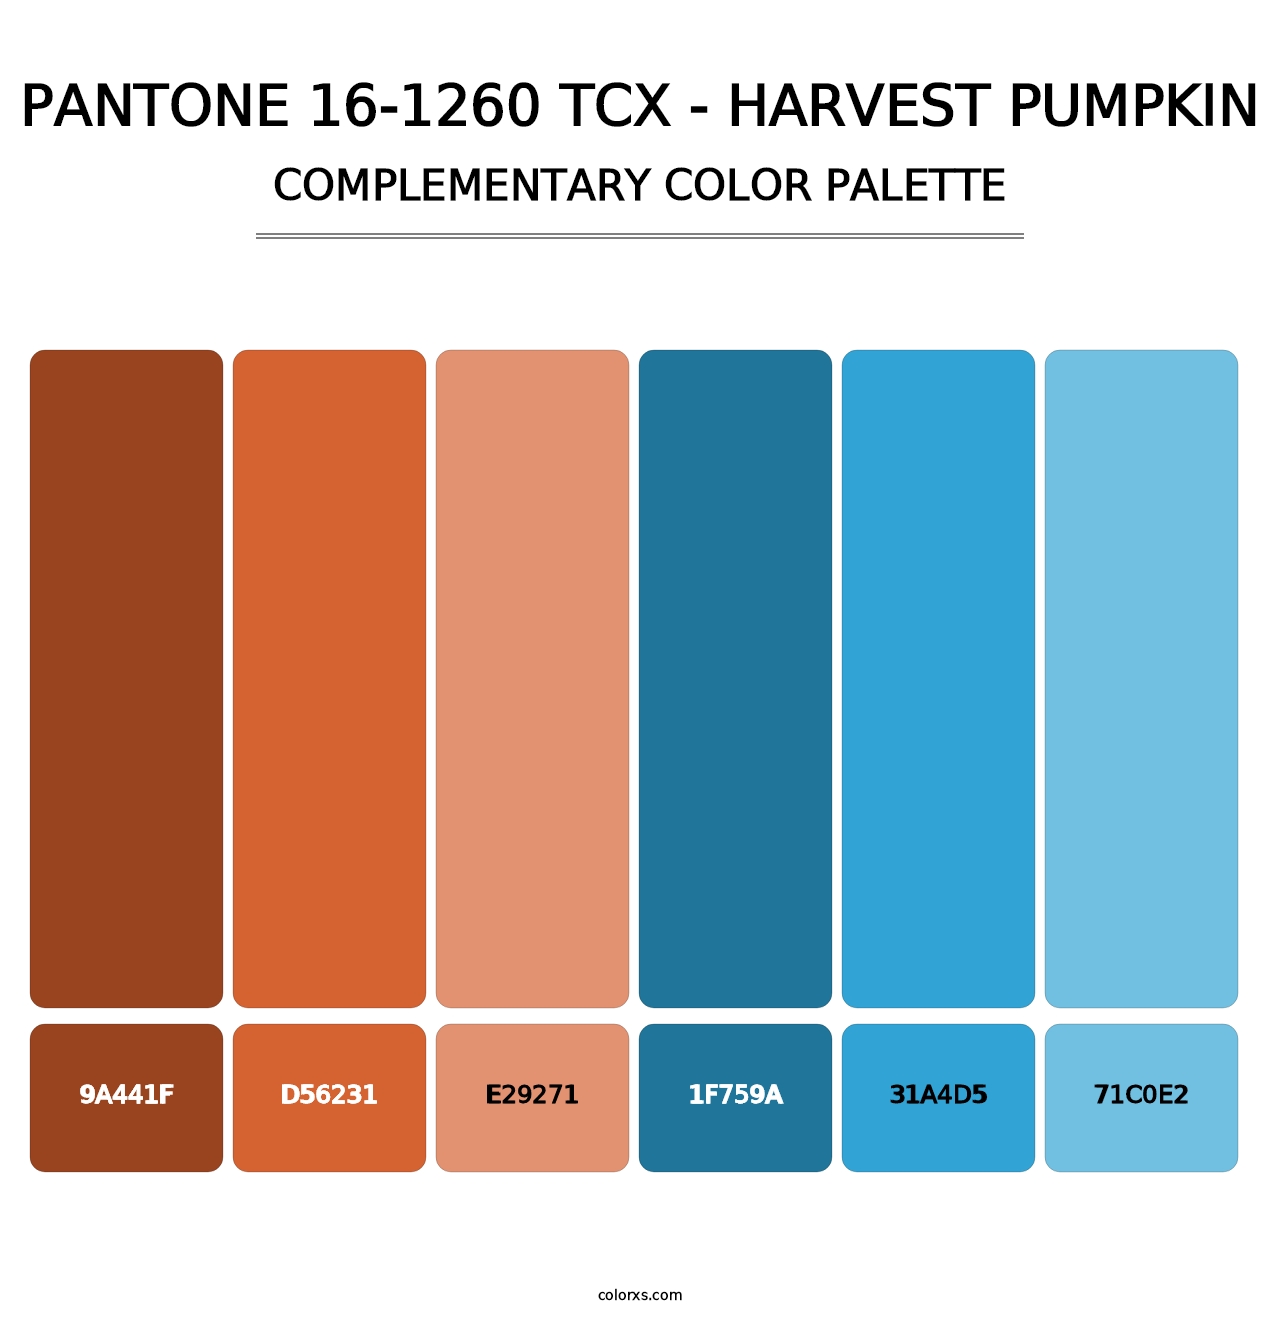 PANTONE 16-1260 TCX - Harvest Pumpkin - Complementary Color Palette